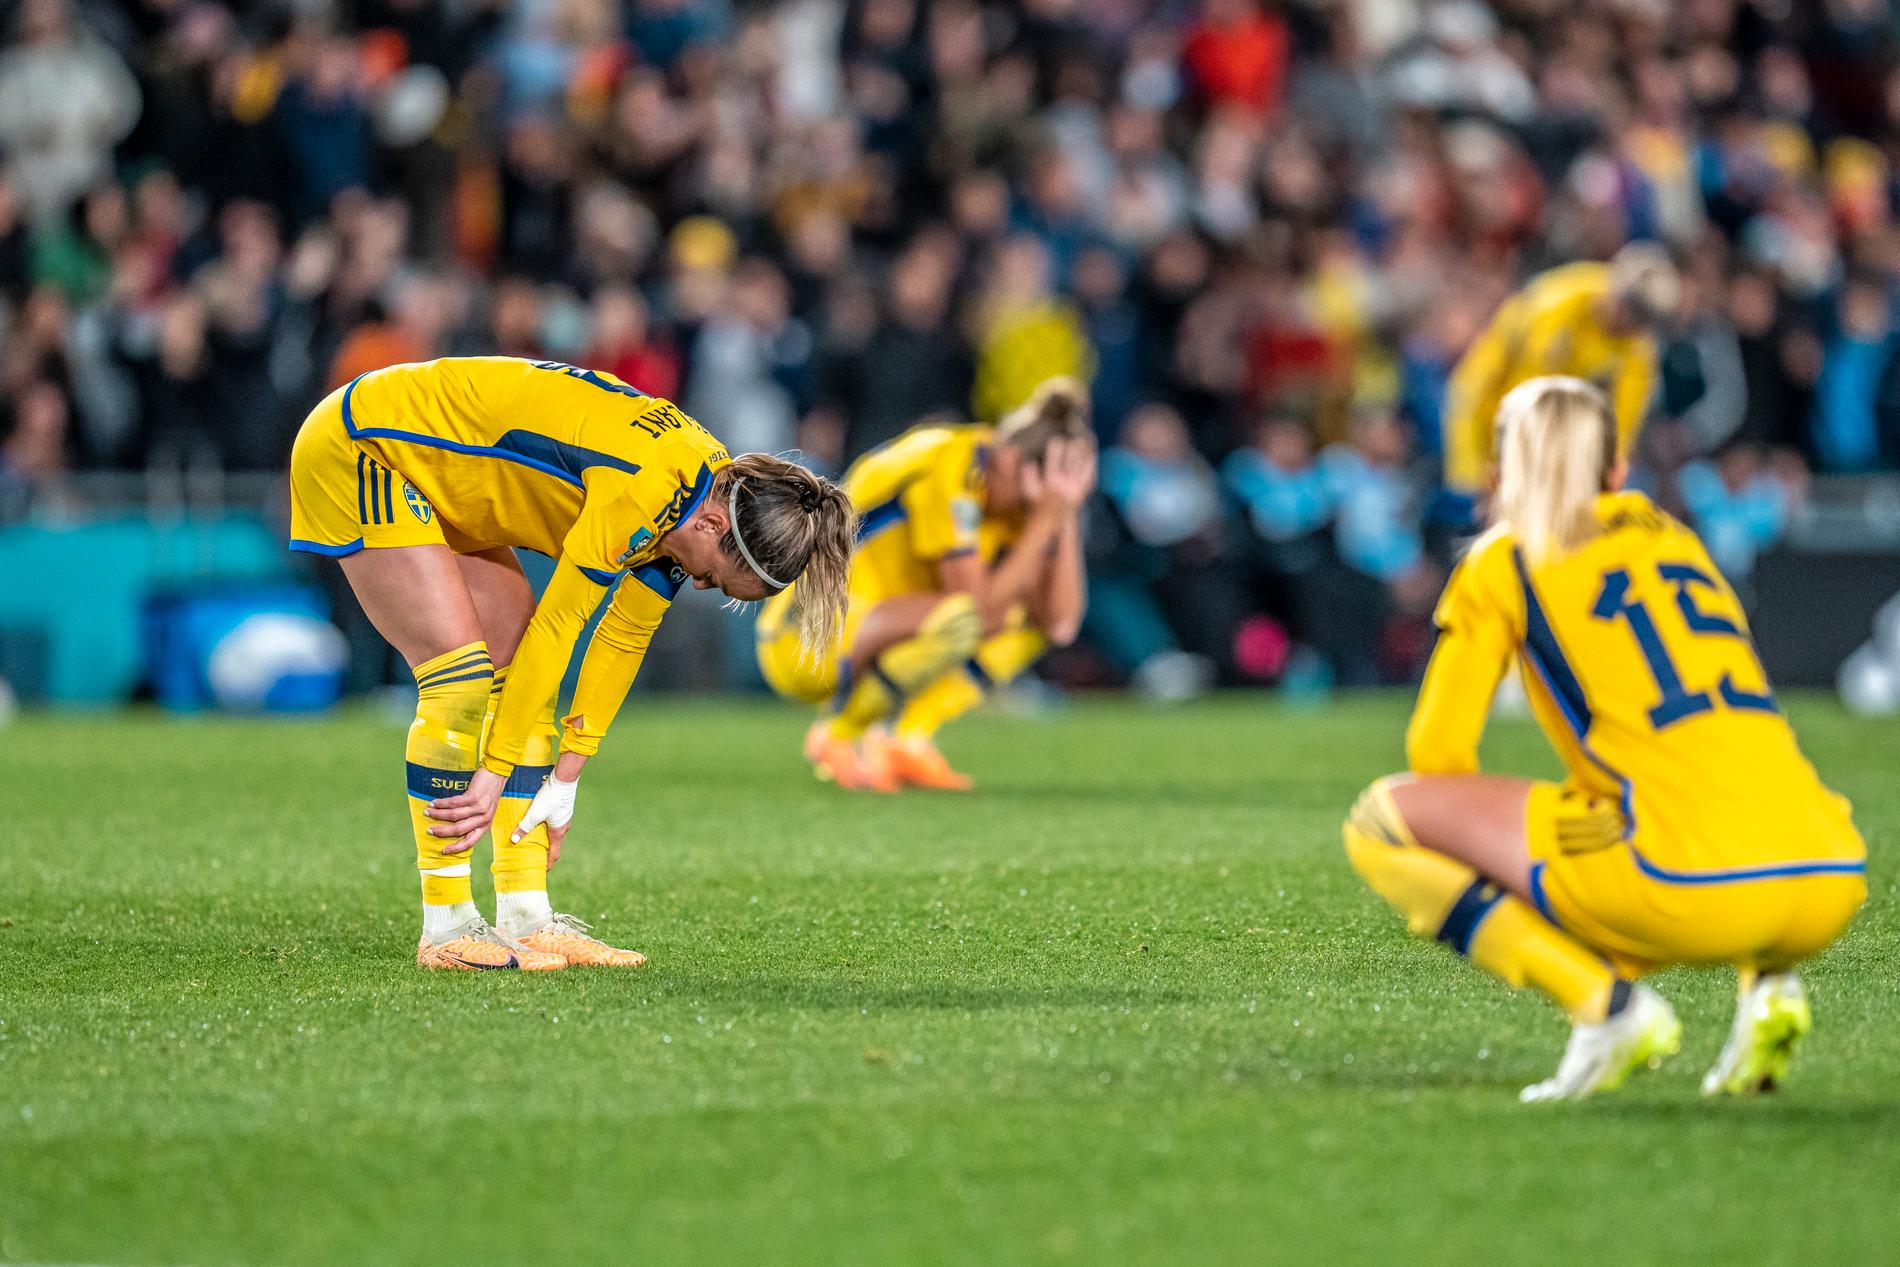 Det verkar allmänt finnas en idé om att vara ”svensk” i sin hållning till idrott är att vika ner sig när det gäller. 